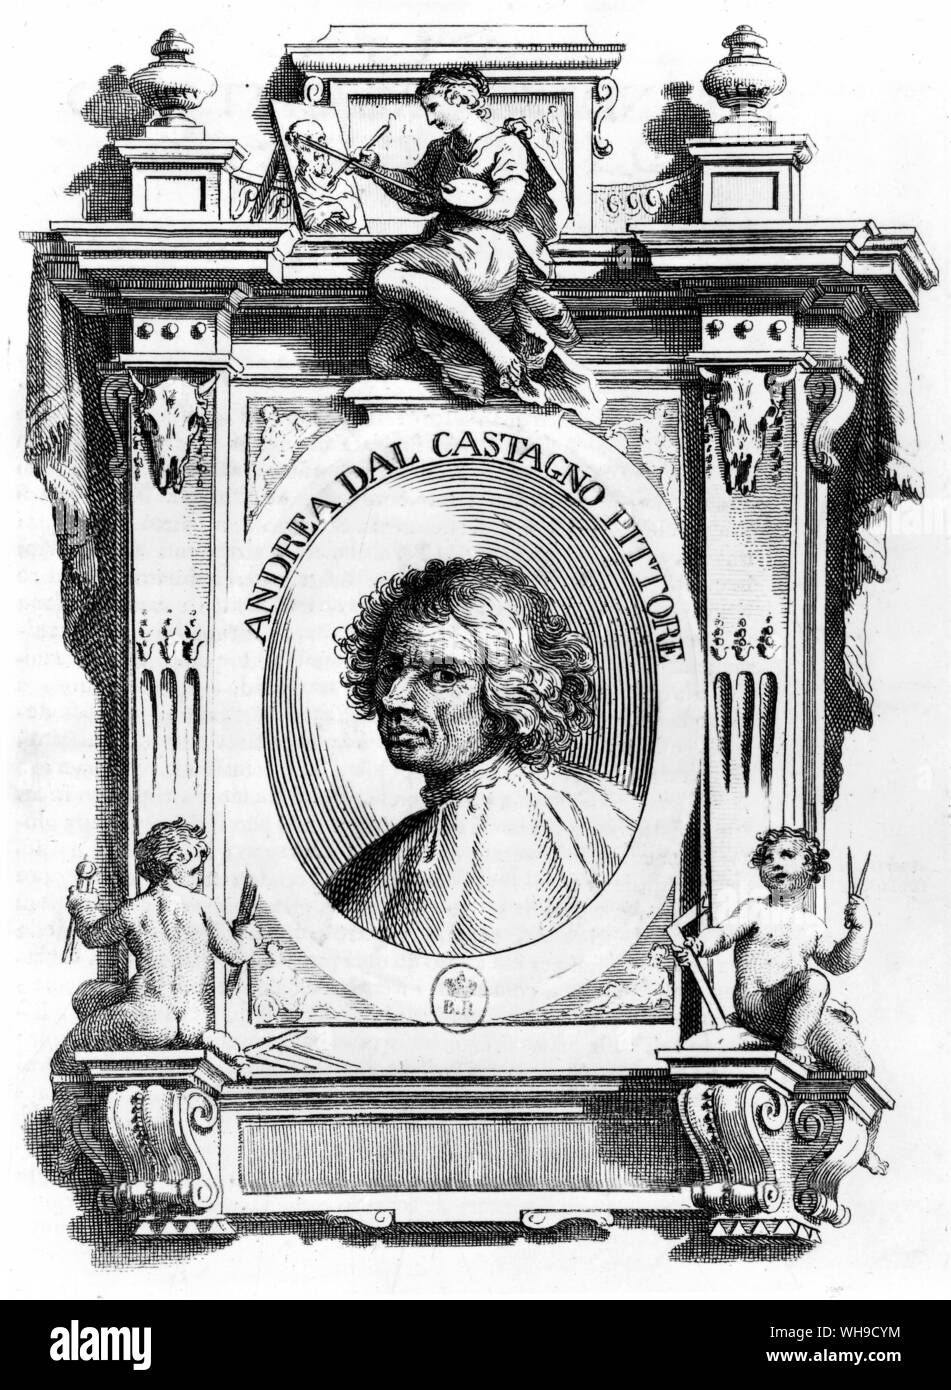 Andrea del Castagno (pseudonimo di Andrea di Bartolo de Bargilla) (c.1421-1457). Italiano pittore rinascimentale. Egli fu attivo a Firenze. Foto Stock